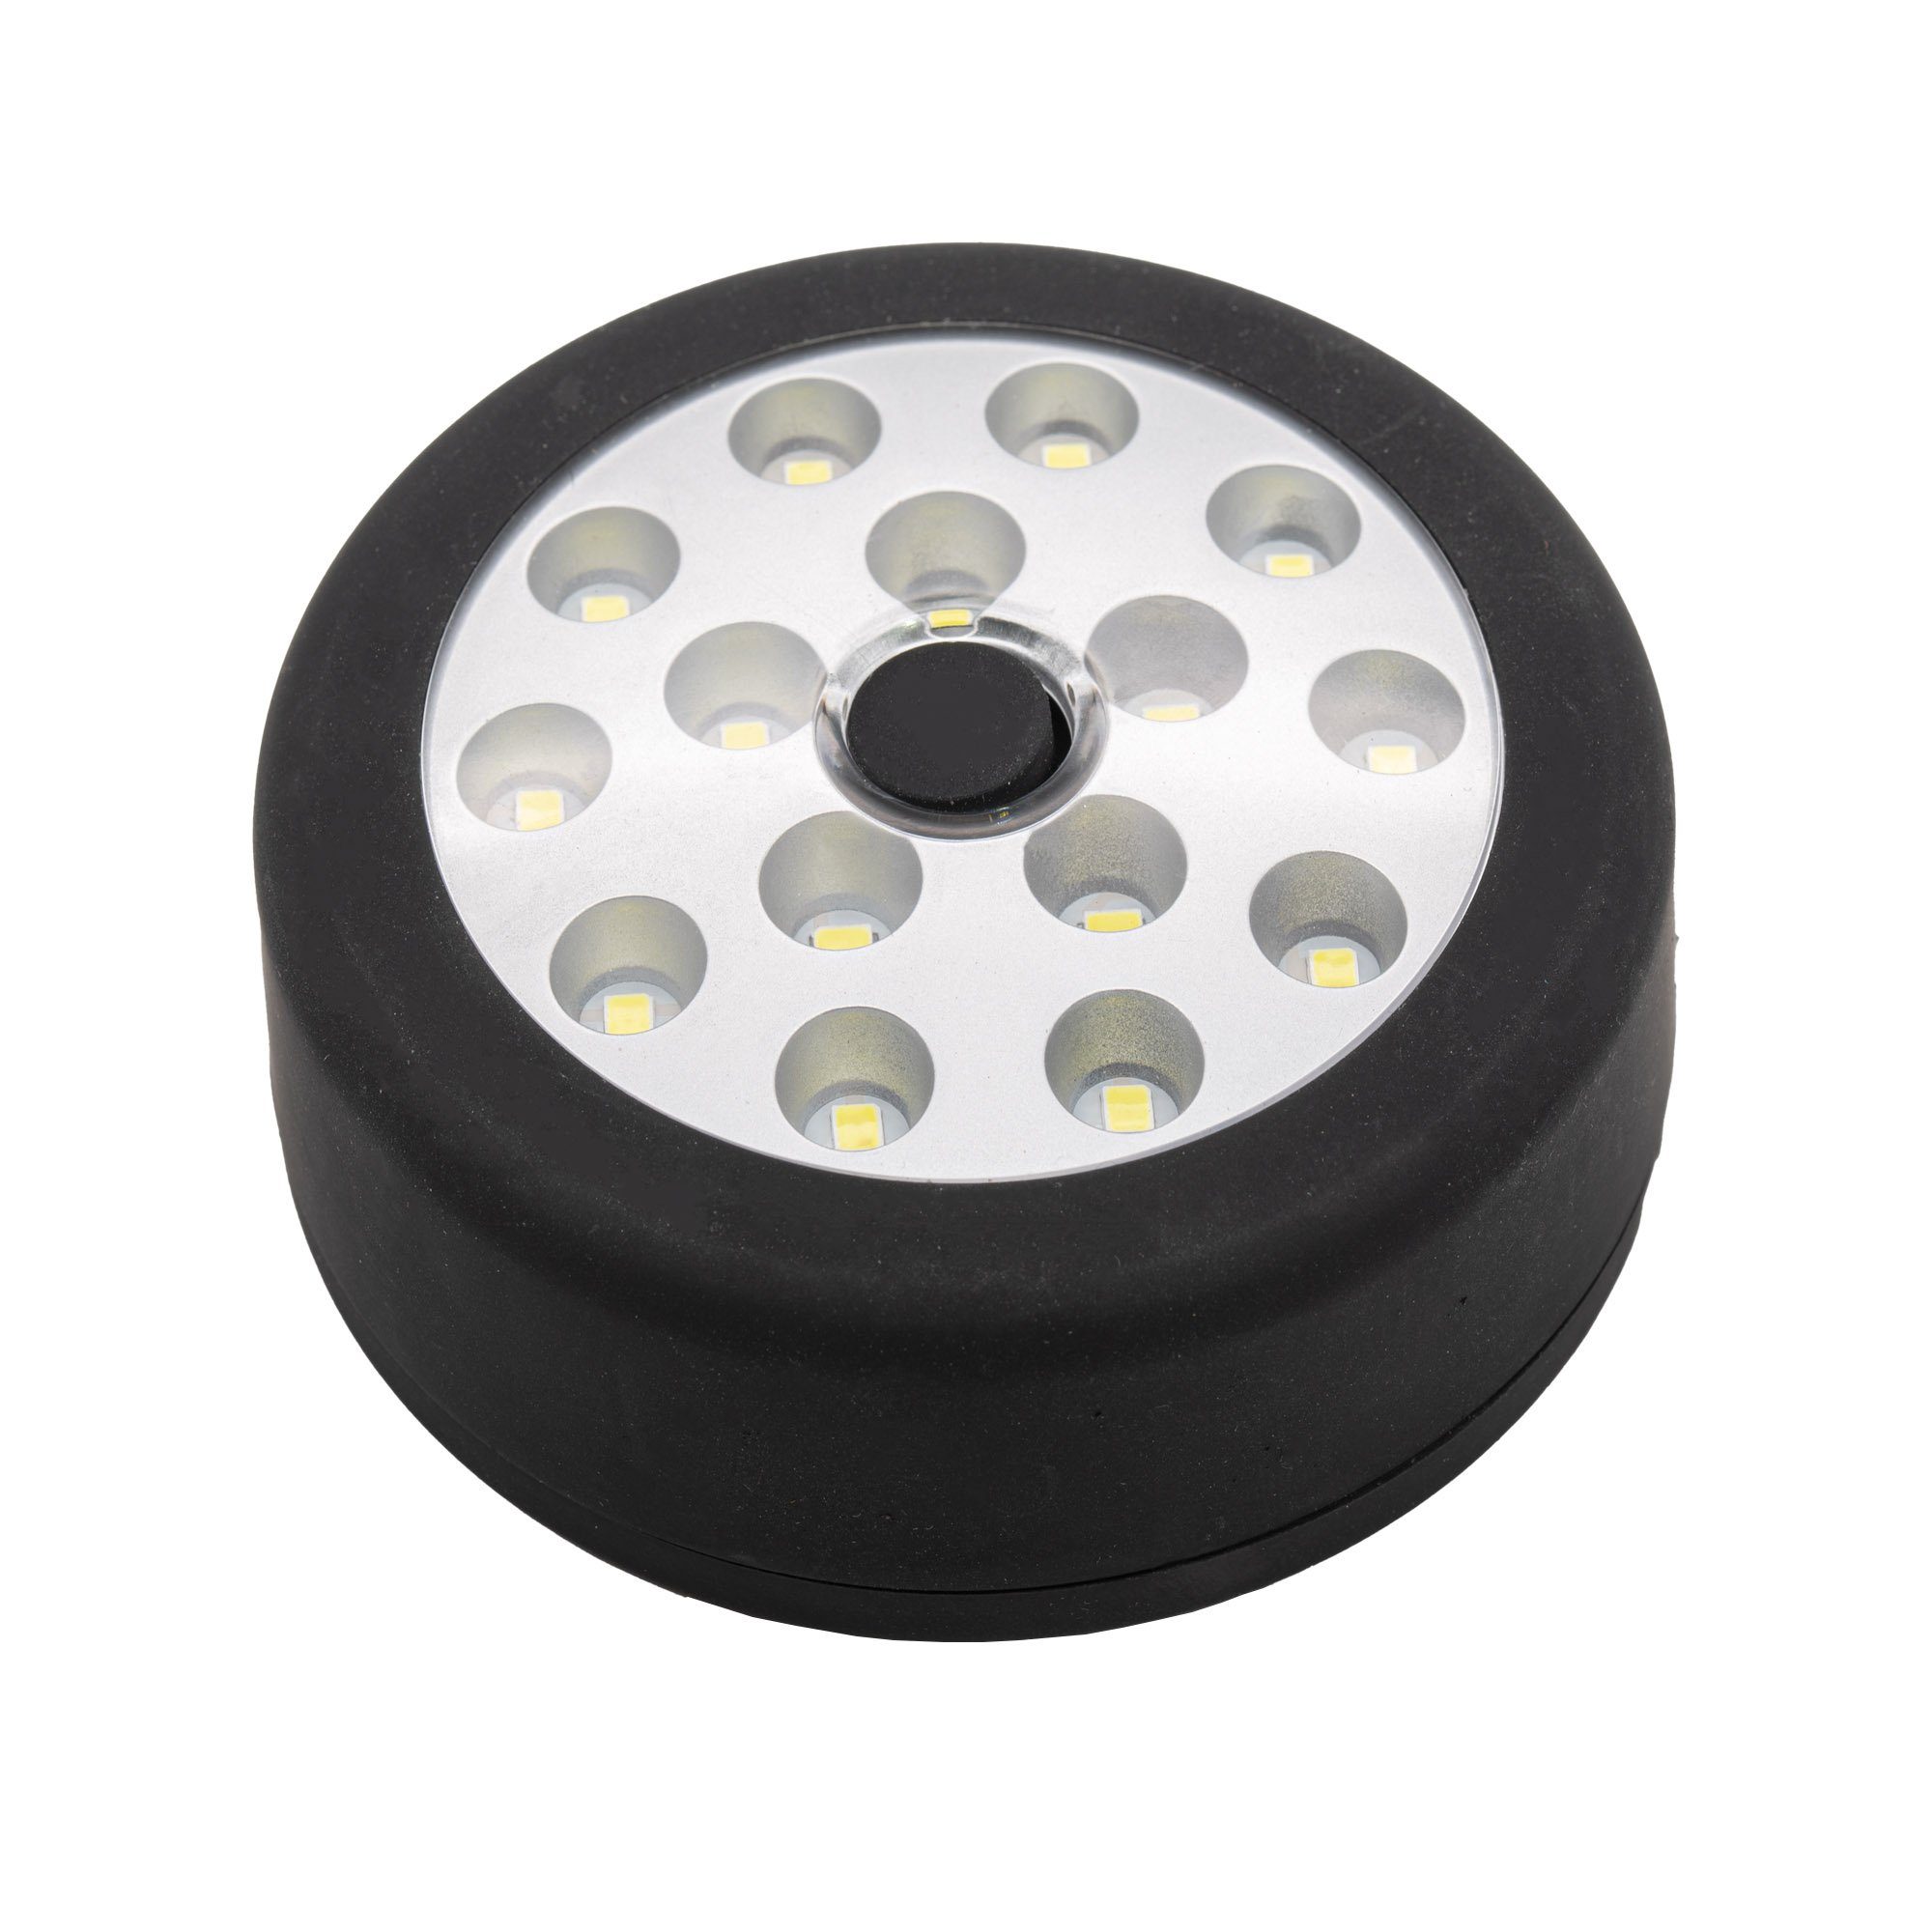 https://i.otto.de/i/otto/24f0cb37-0af2-5887-99b8-41bf45353b51/tsb-werk-taschenlampe-led-leuchte-lampe-batterie-camping-kueche-schrank-1-st-magnet-nachtlicht-rund-touch.jpg?$formatz$